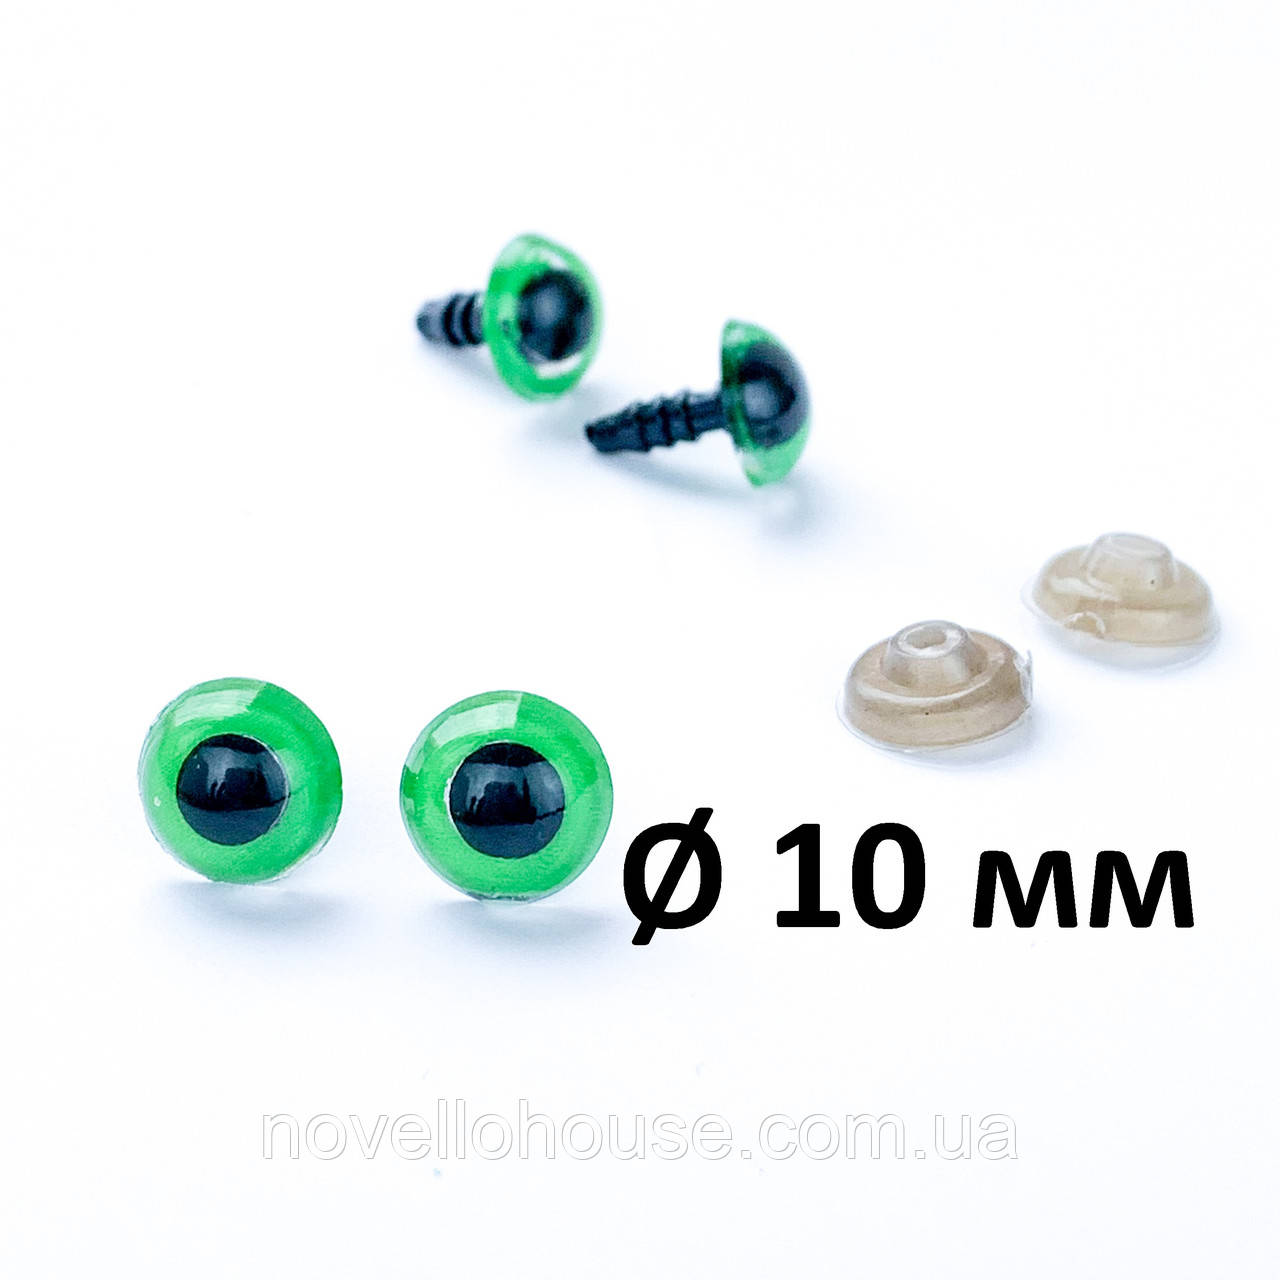 Очі на гвинті із заглушкою зелені 10 мм (Фурнітура для ляльок)